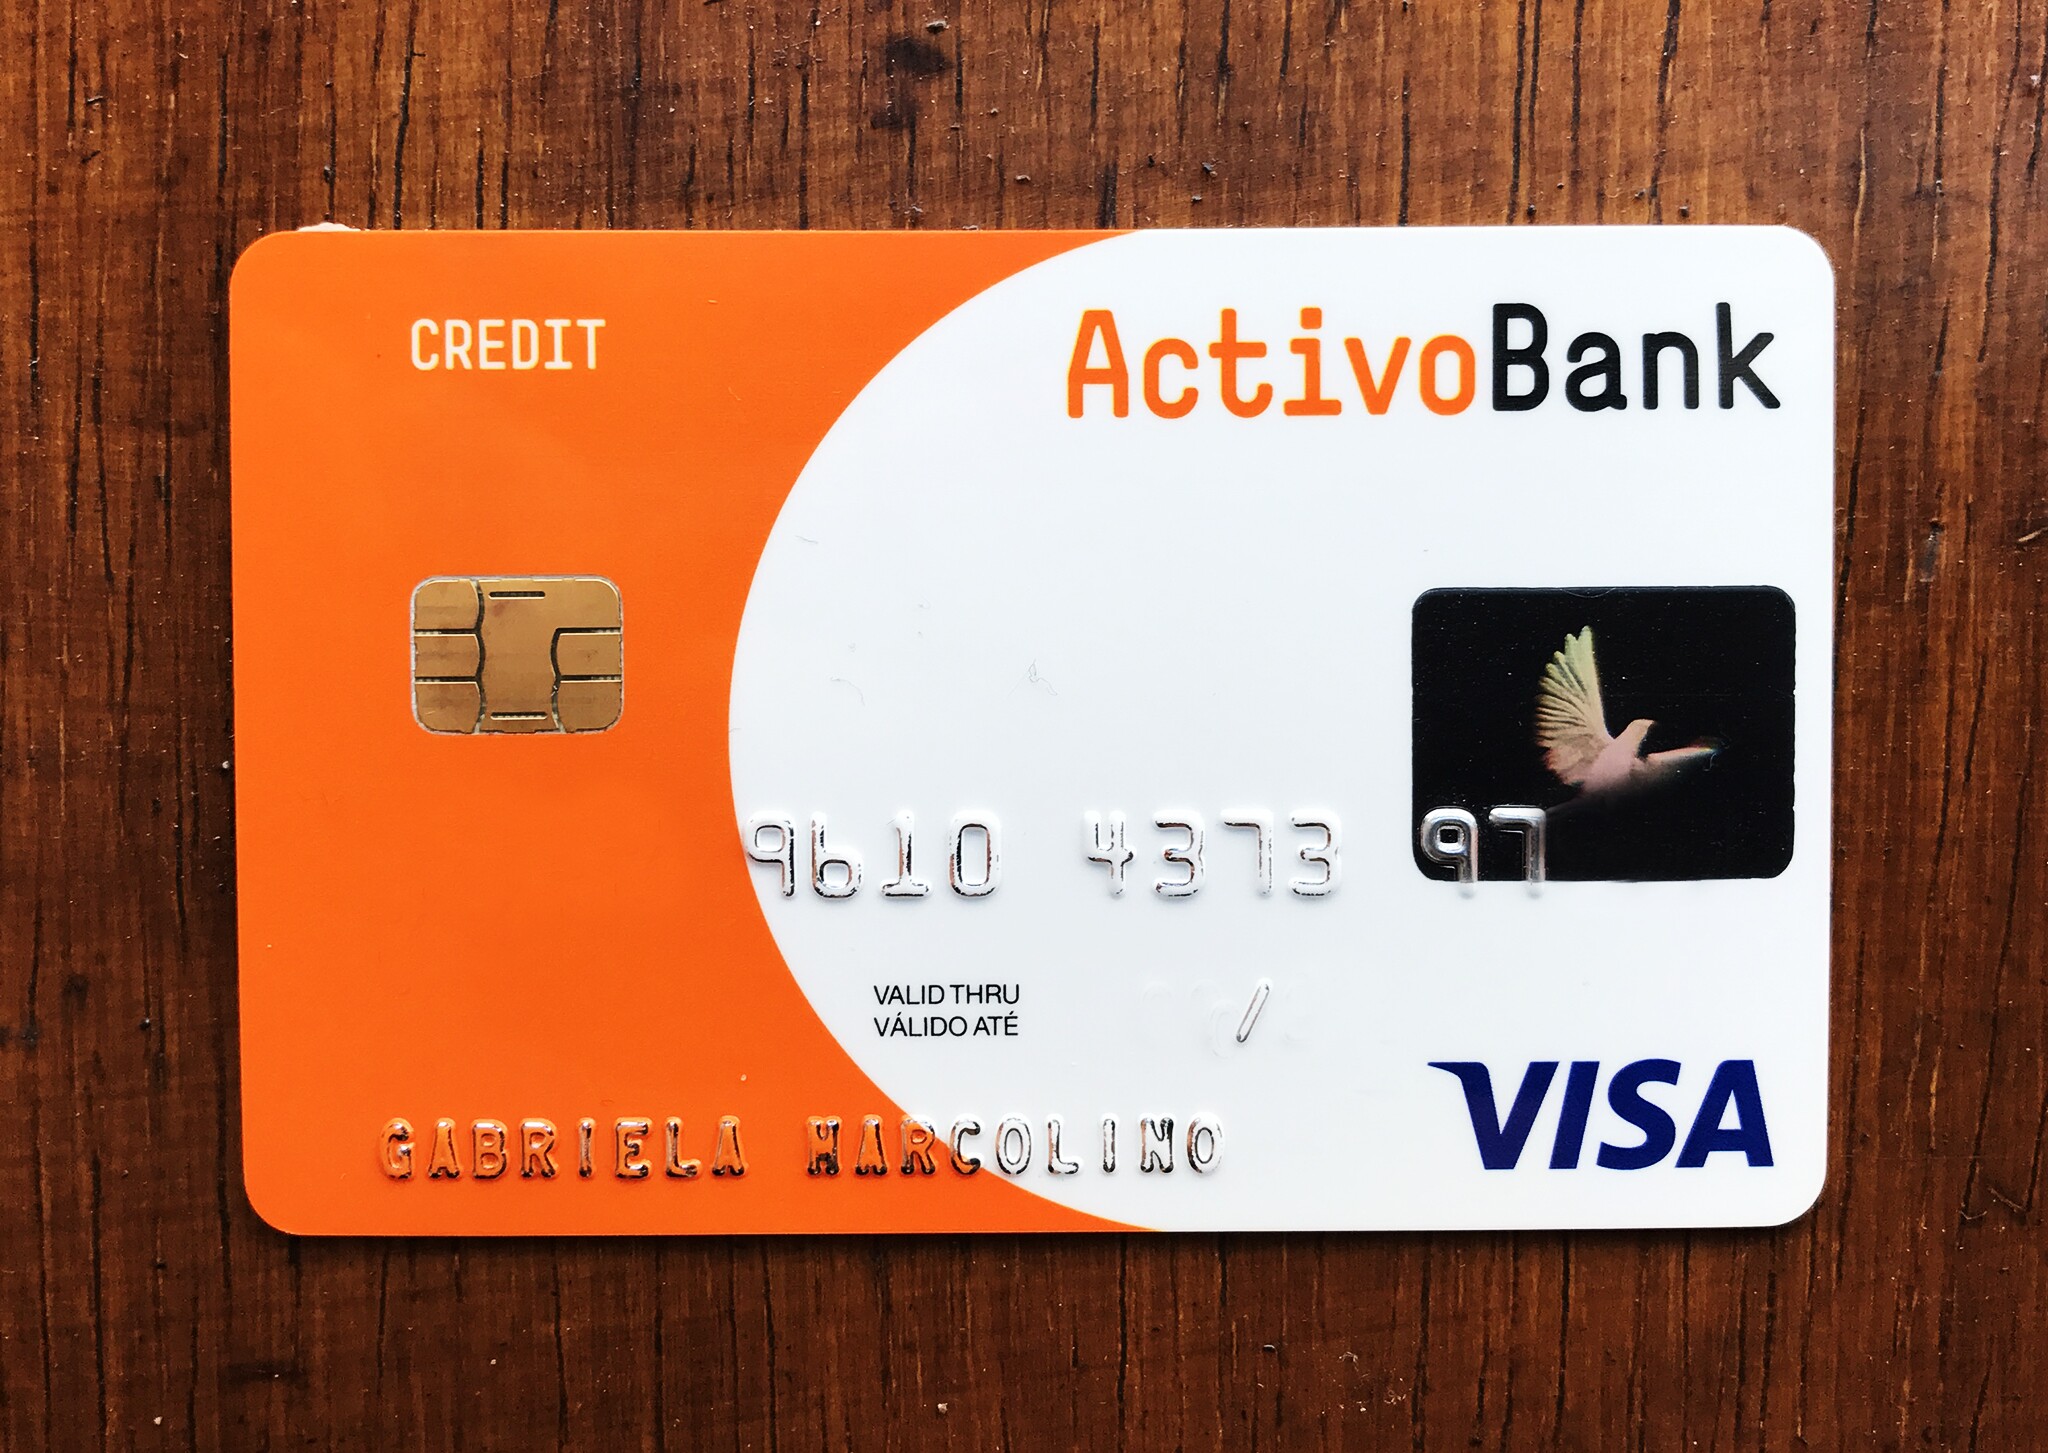 cartão activo bank